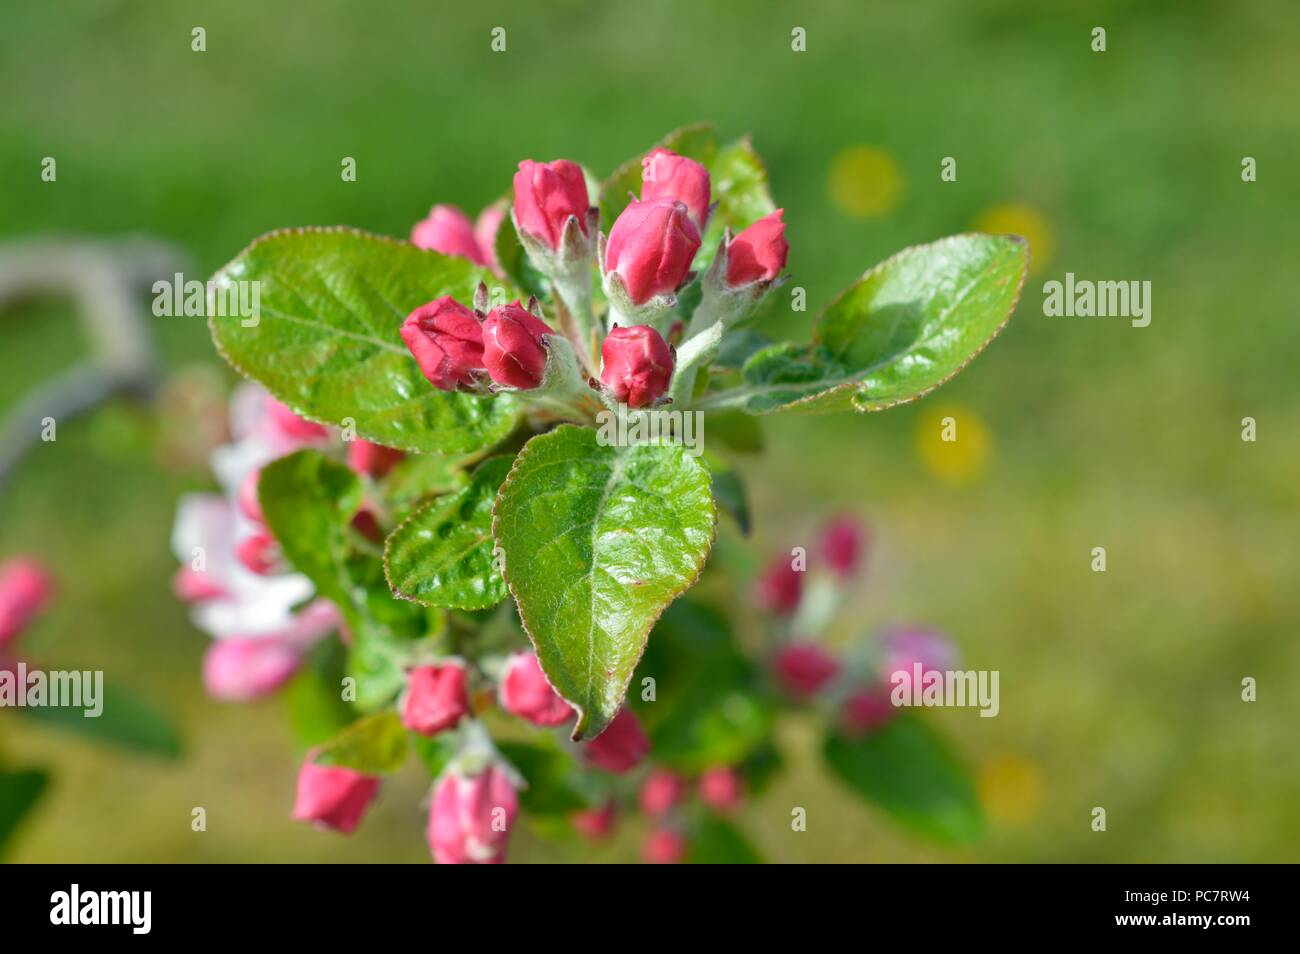 Apple Baumanns Reinette Stock Photo